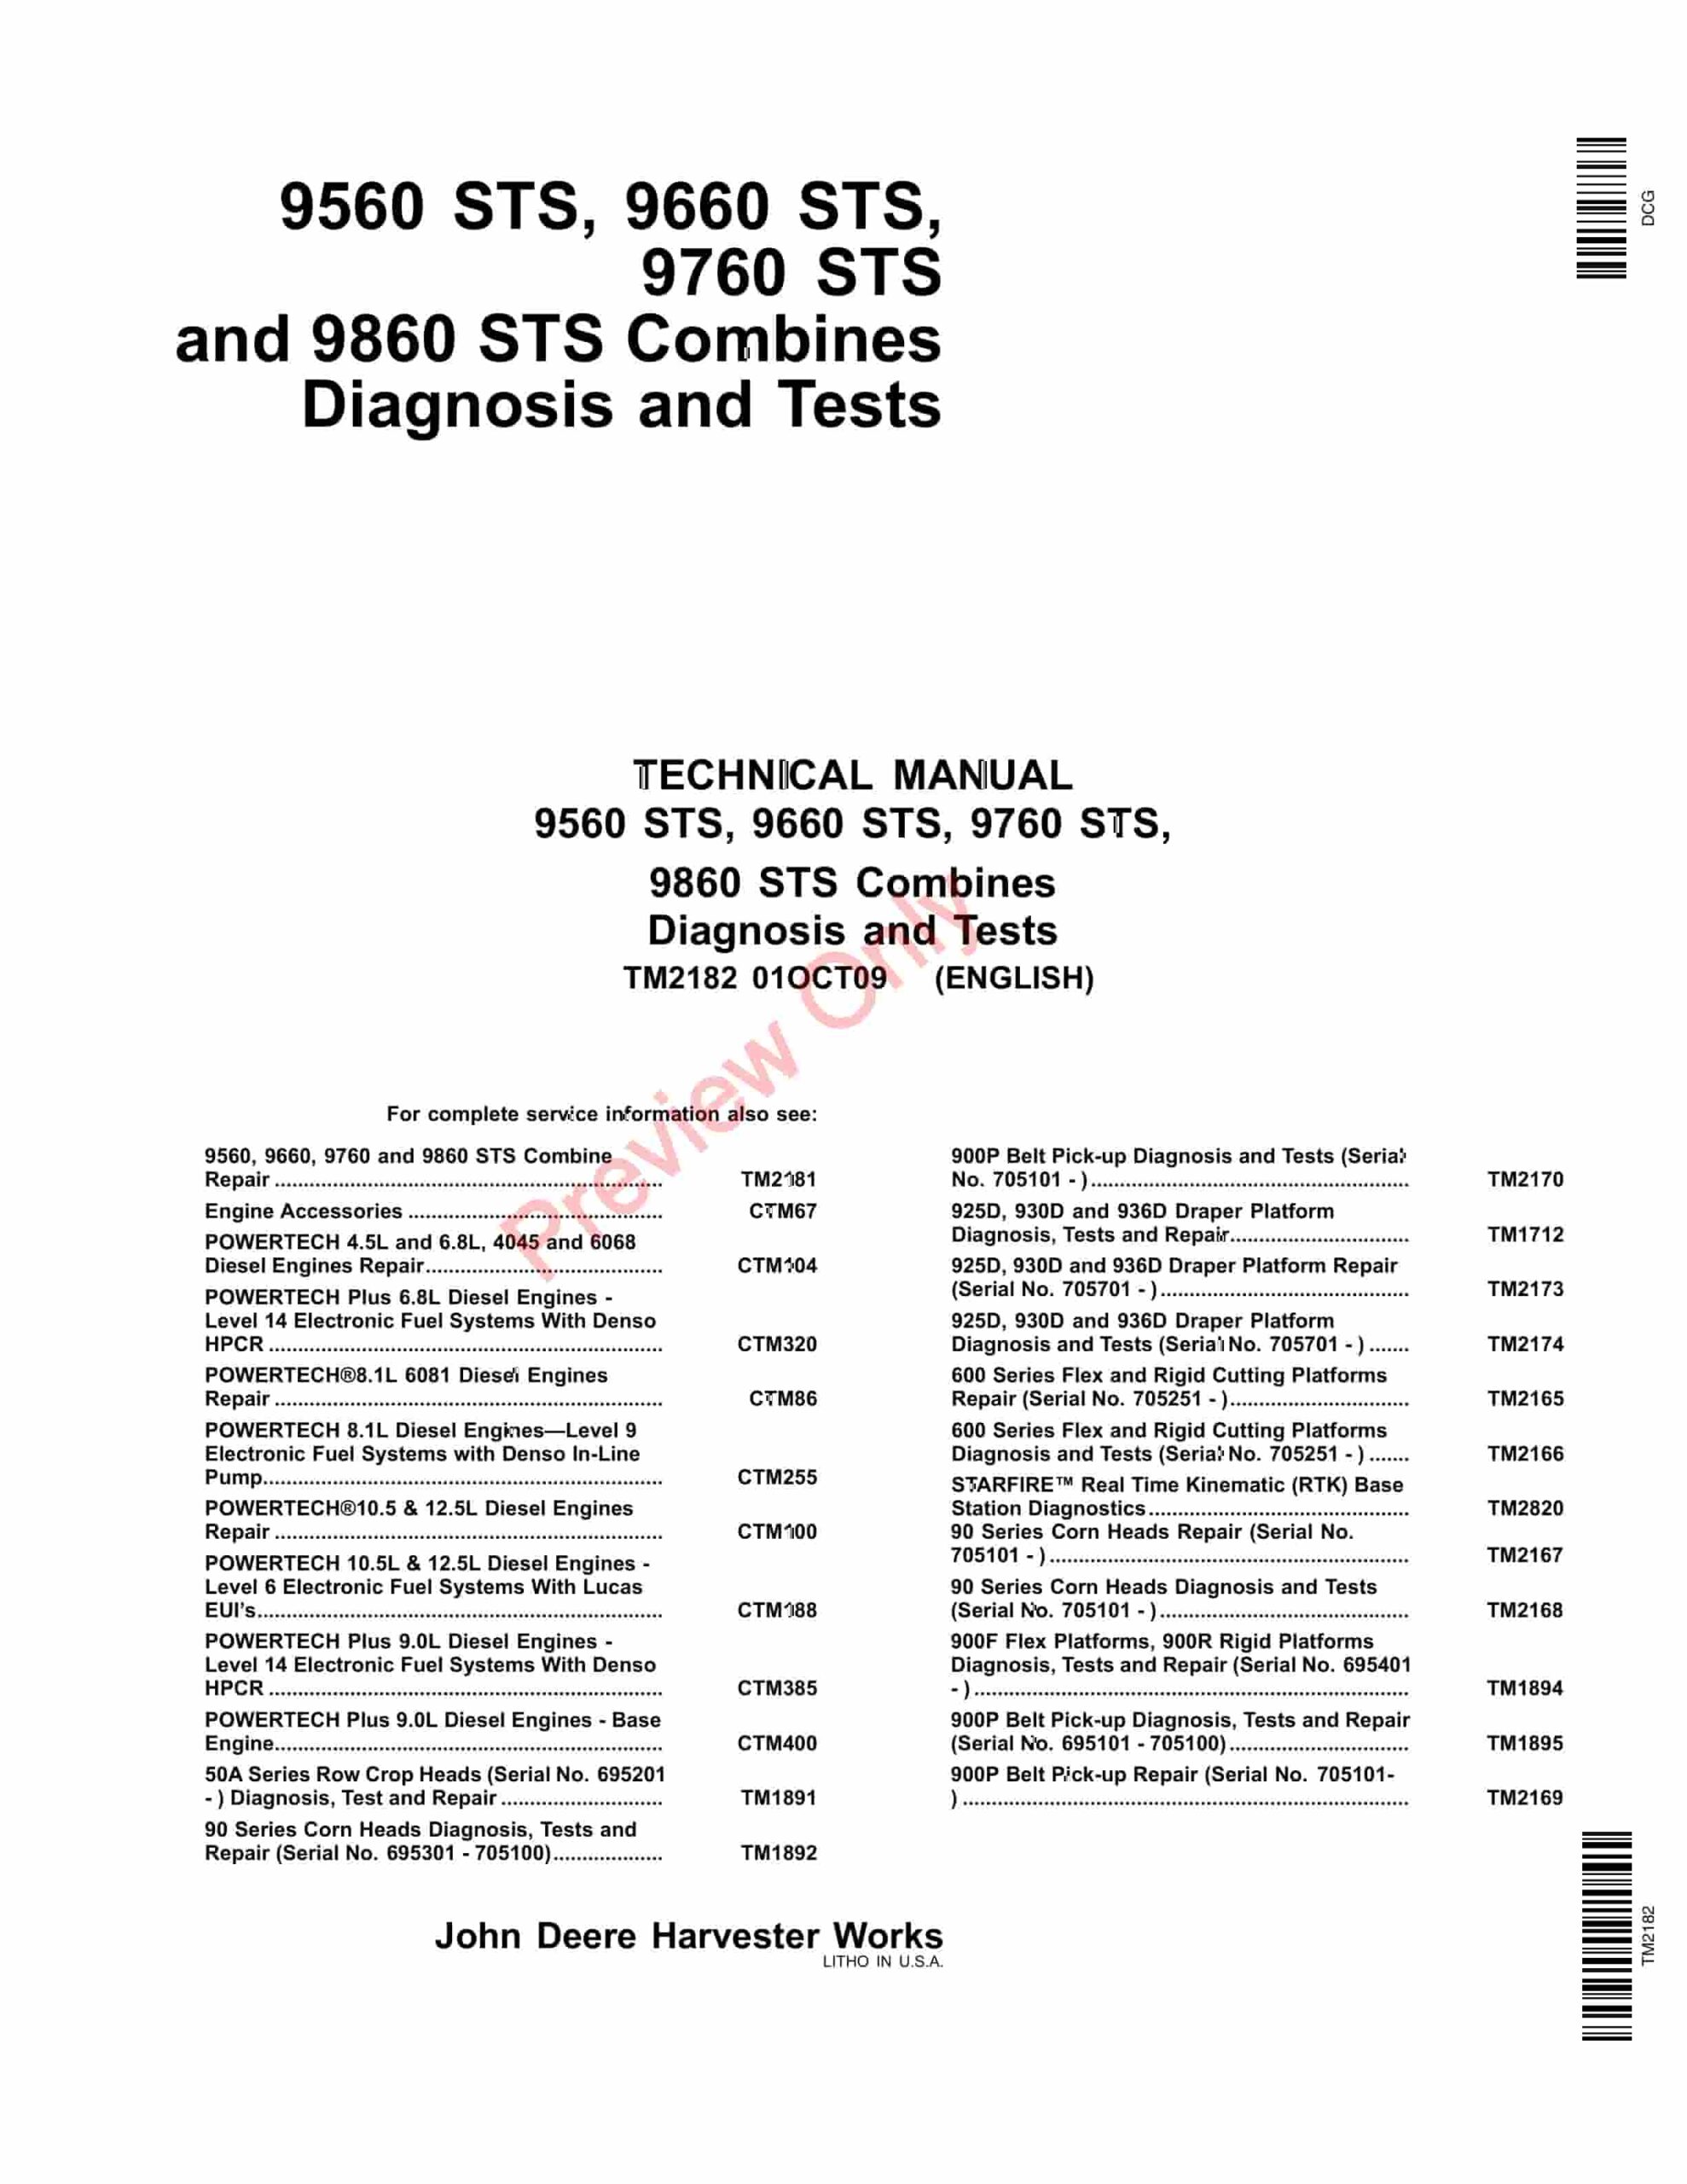 John Deere 9560 -9860 STS , Combines Service Information TM2182 01OCT09-1